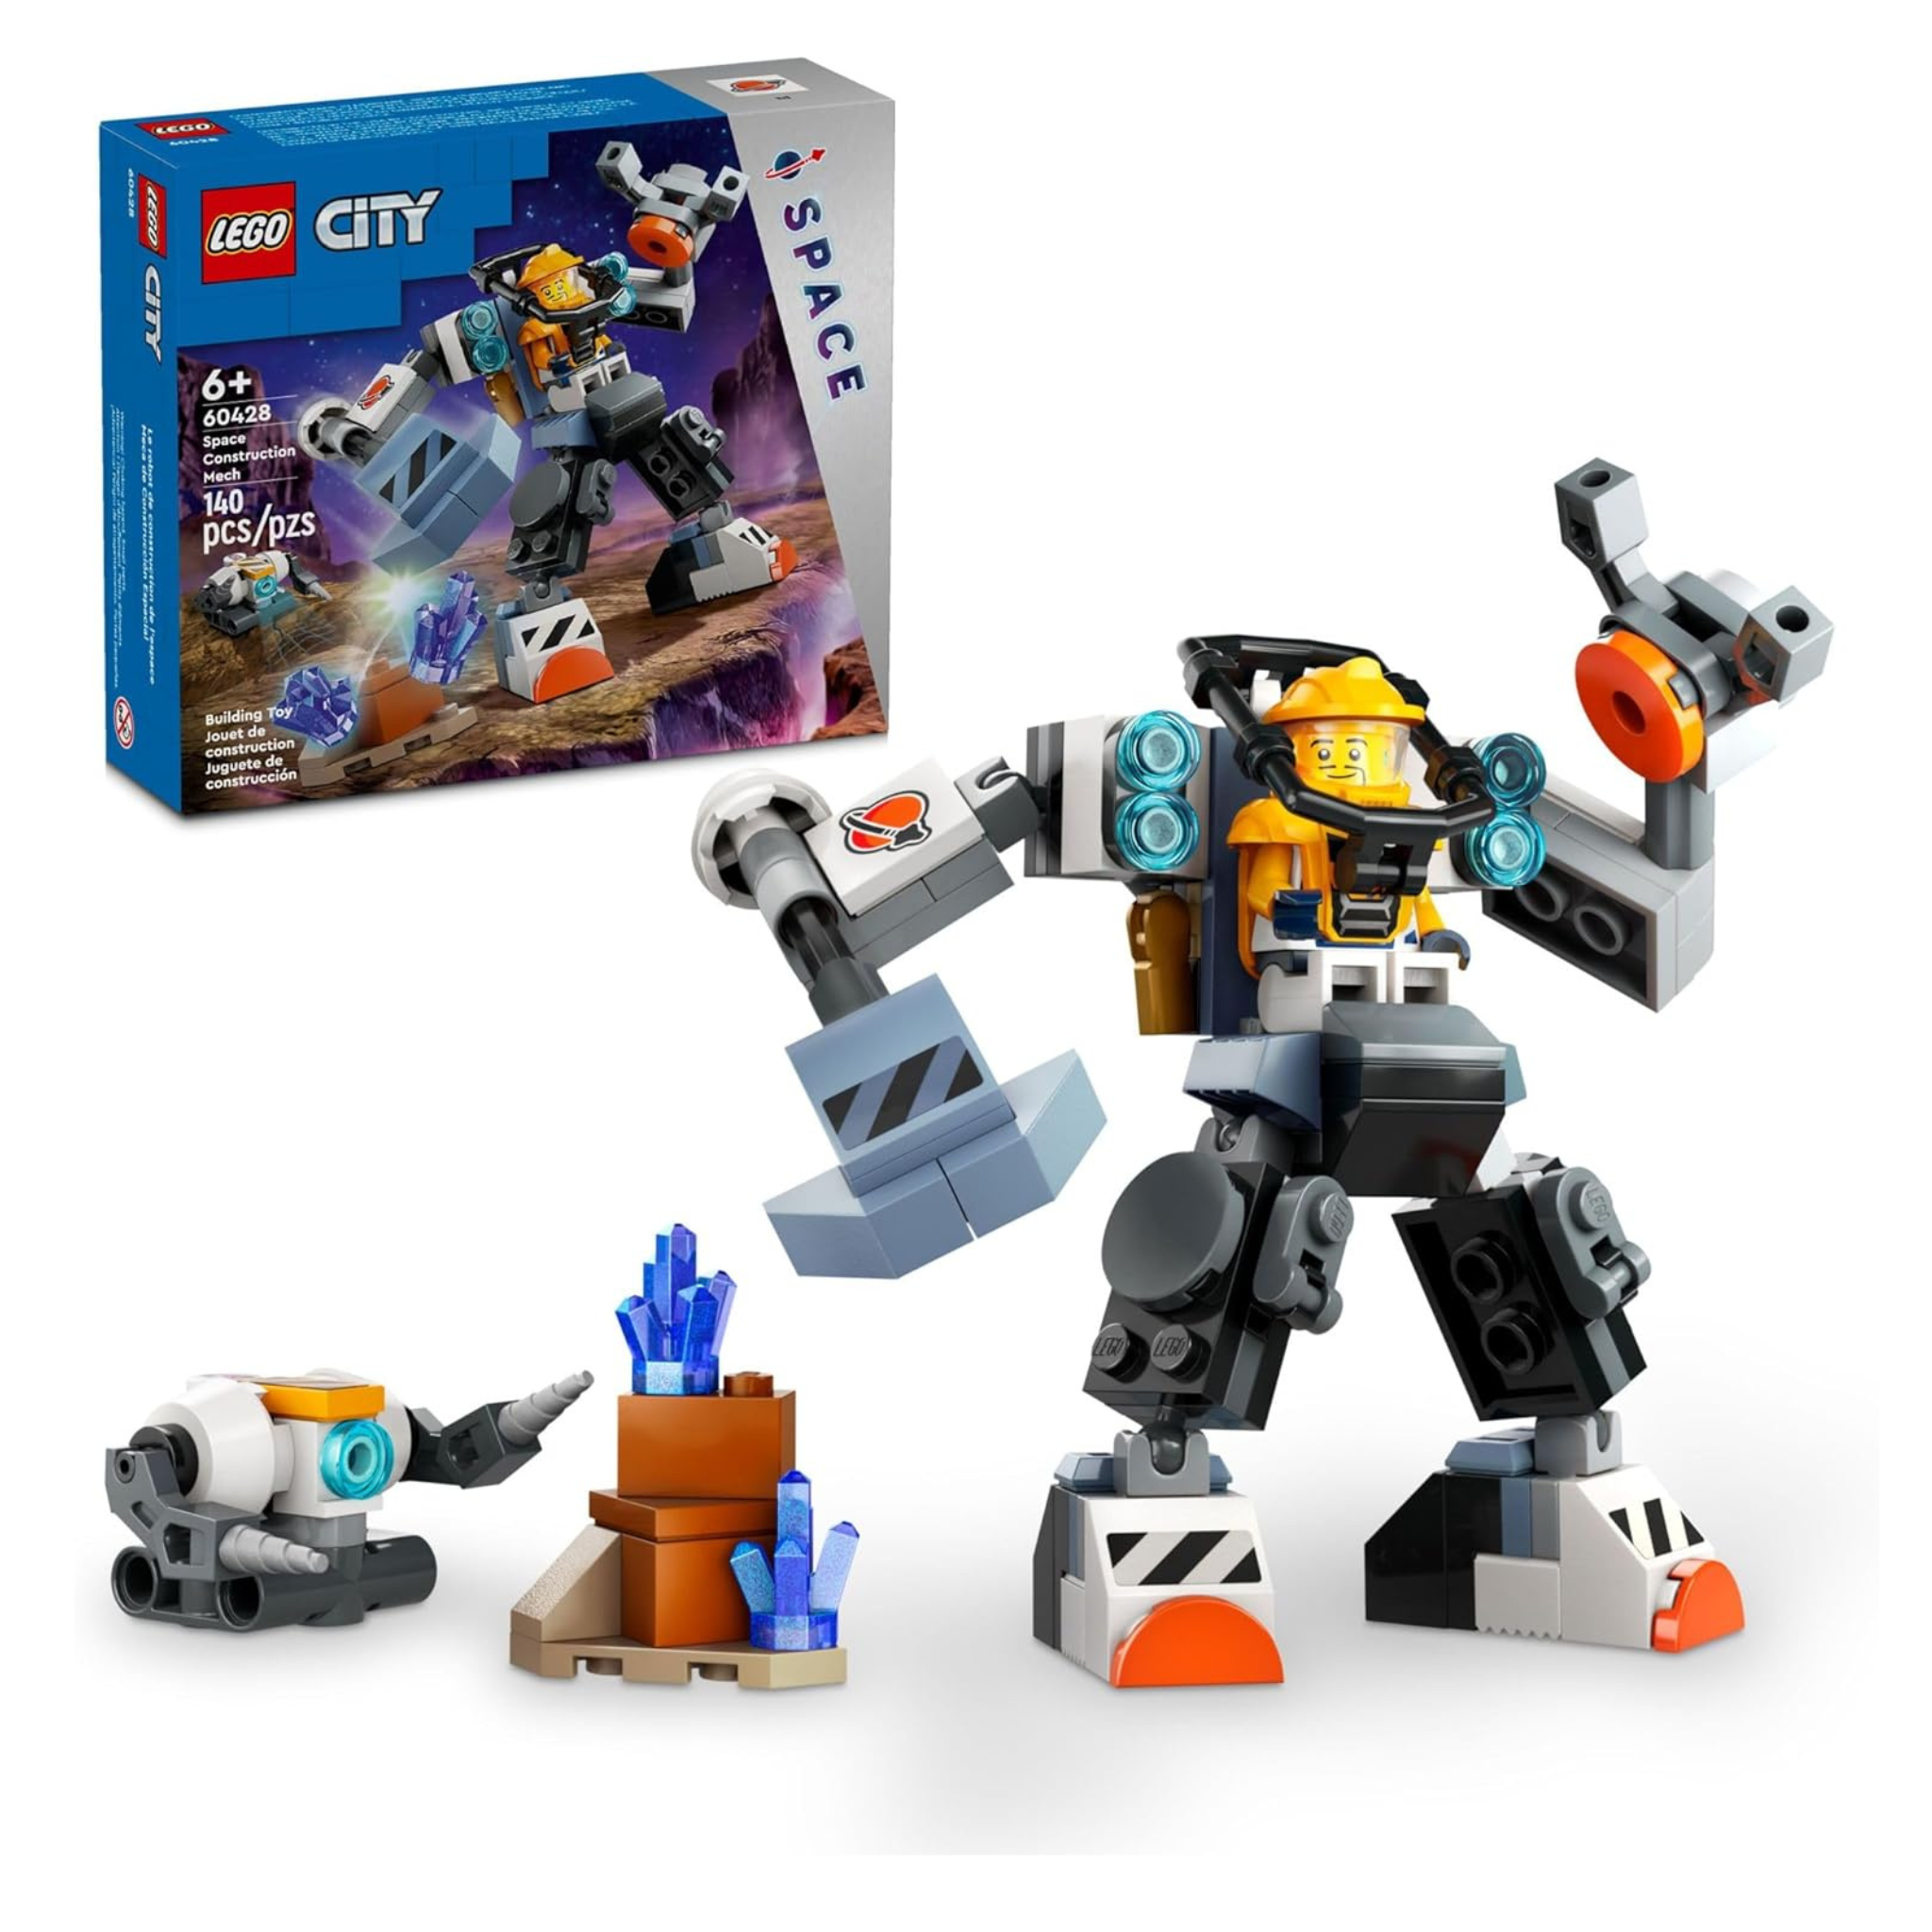 140-Piece LEGO City Space Construction Mech Suit Building Set